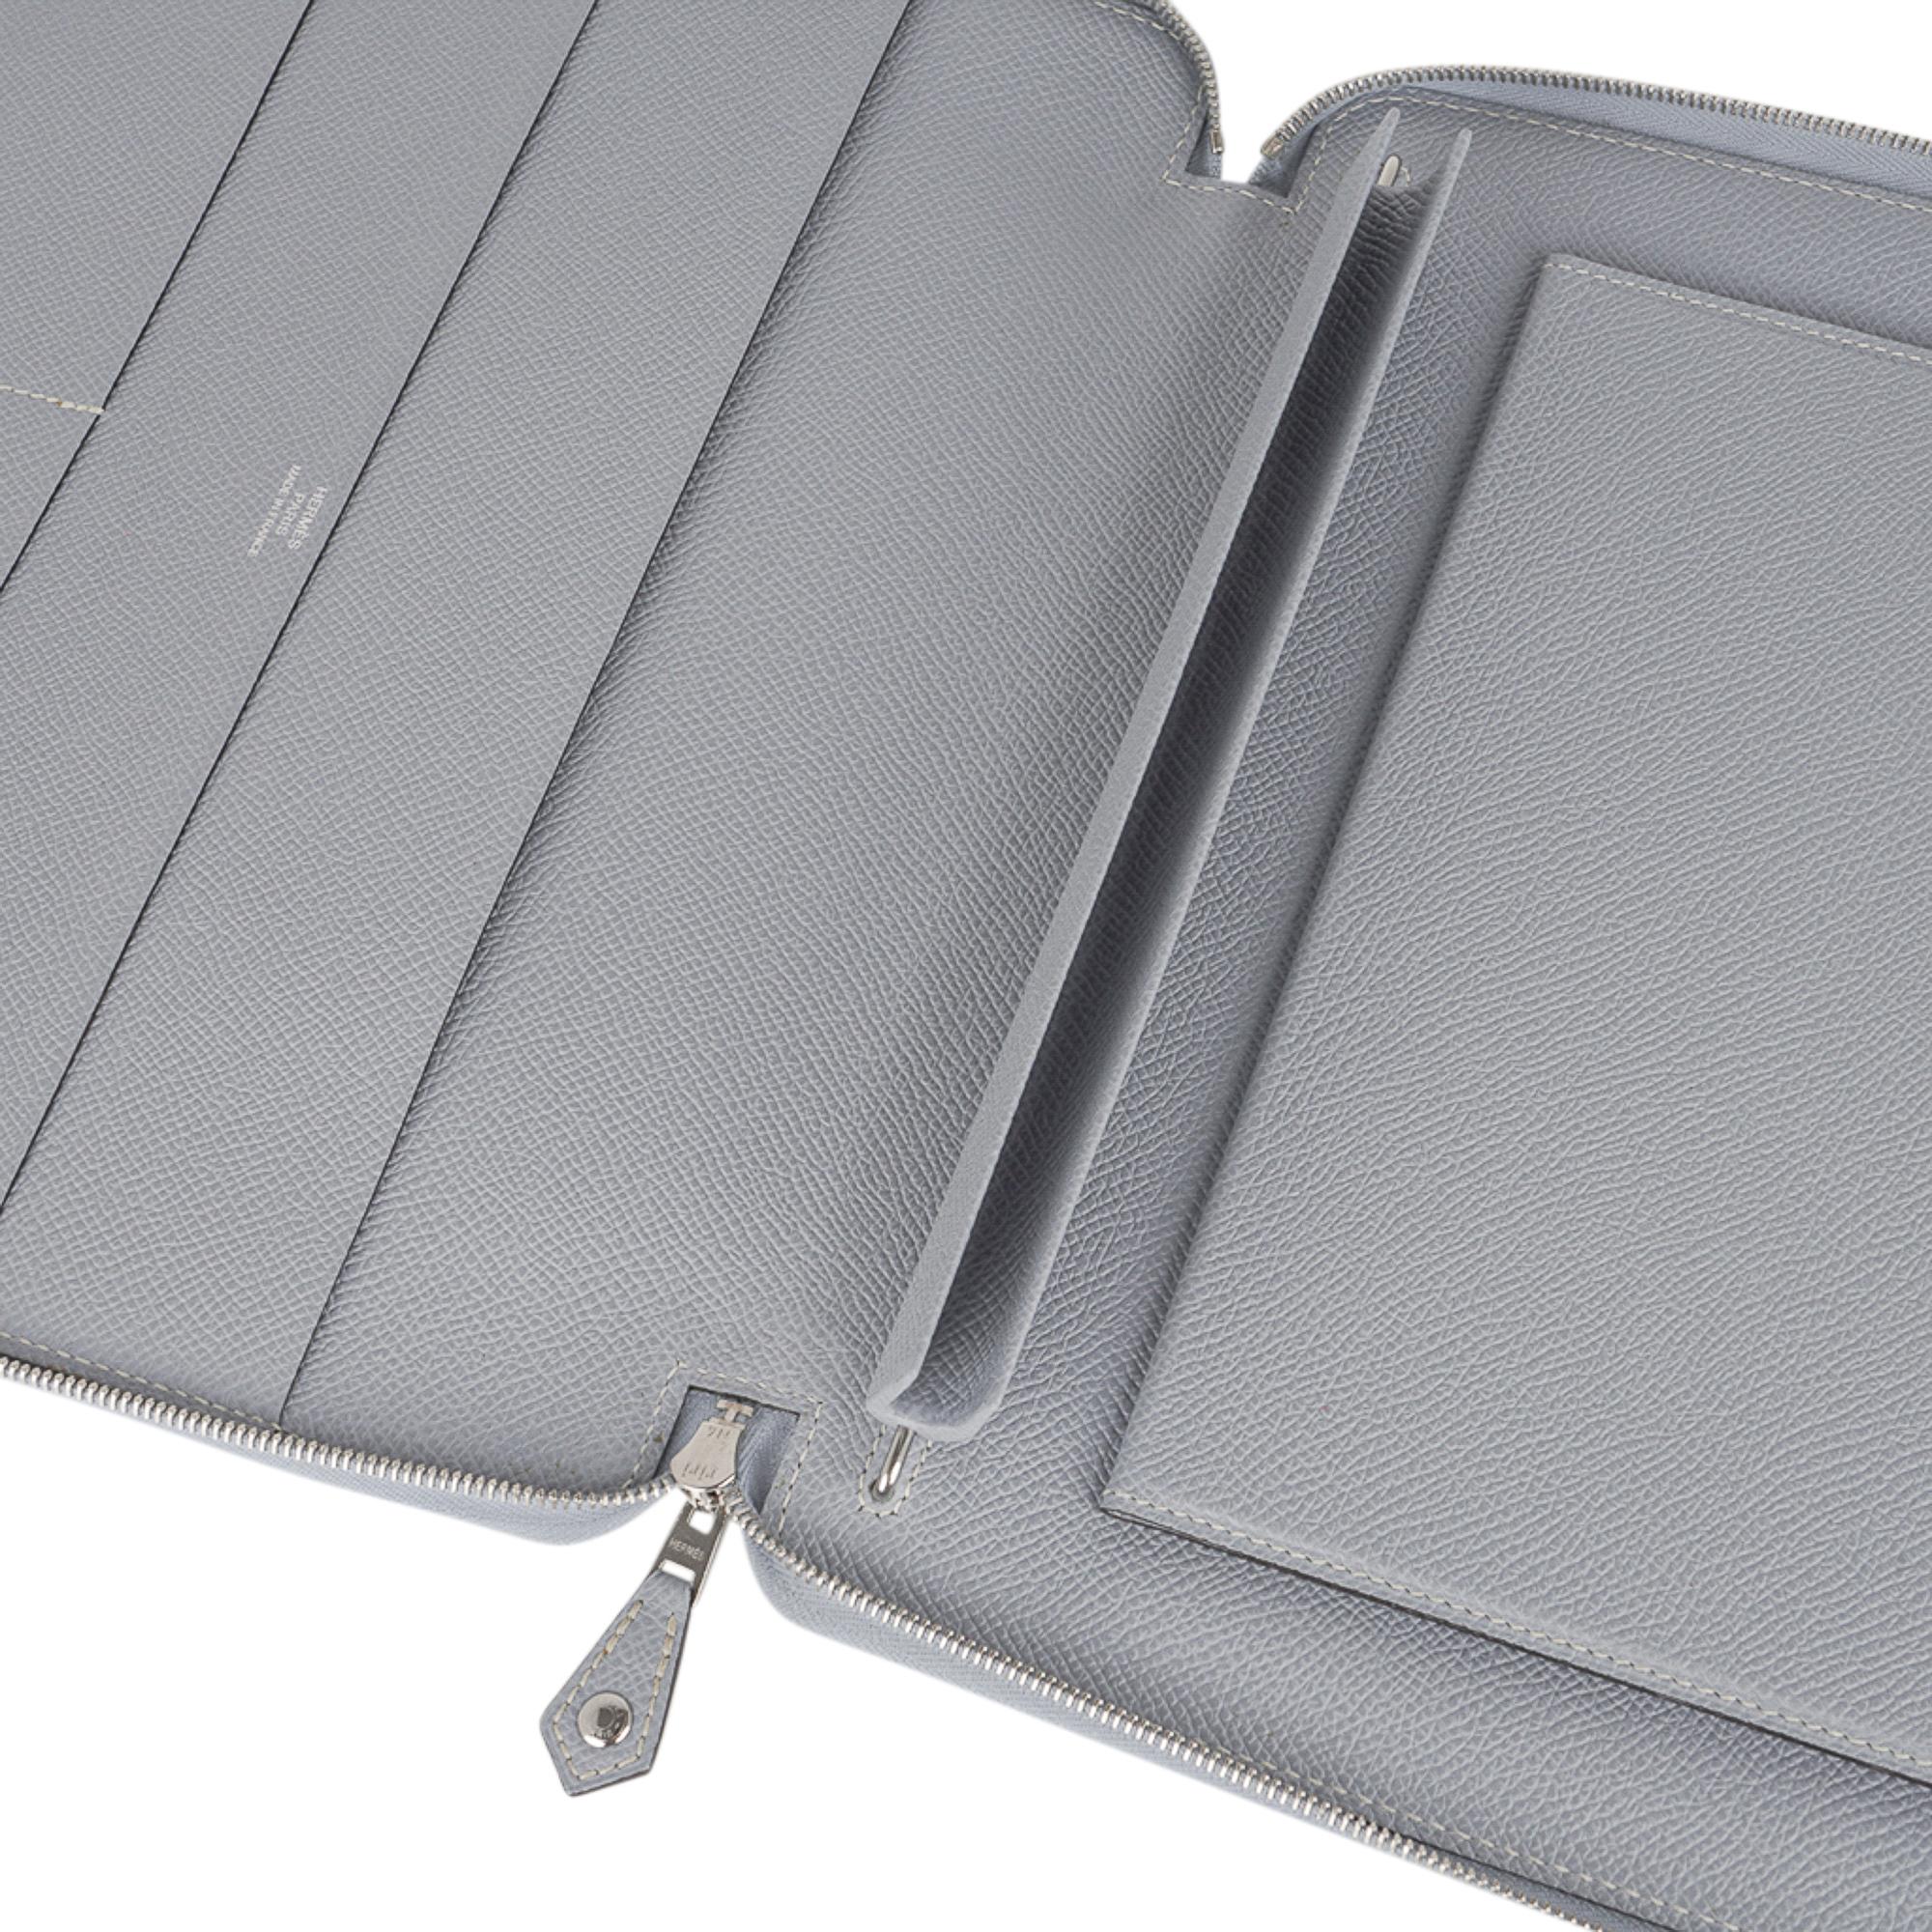 Mightychic vous propose une housse d'ordinateur portable e-Zip Hermes garantie authentique, en cuir Blue Glacier et Epsom.
L'étui est doté d'une pochette centrale rigide doublée de cuir pour accueillir l'iPad.
2 poches longues à fente et 3 petites